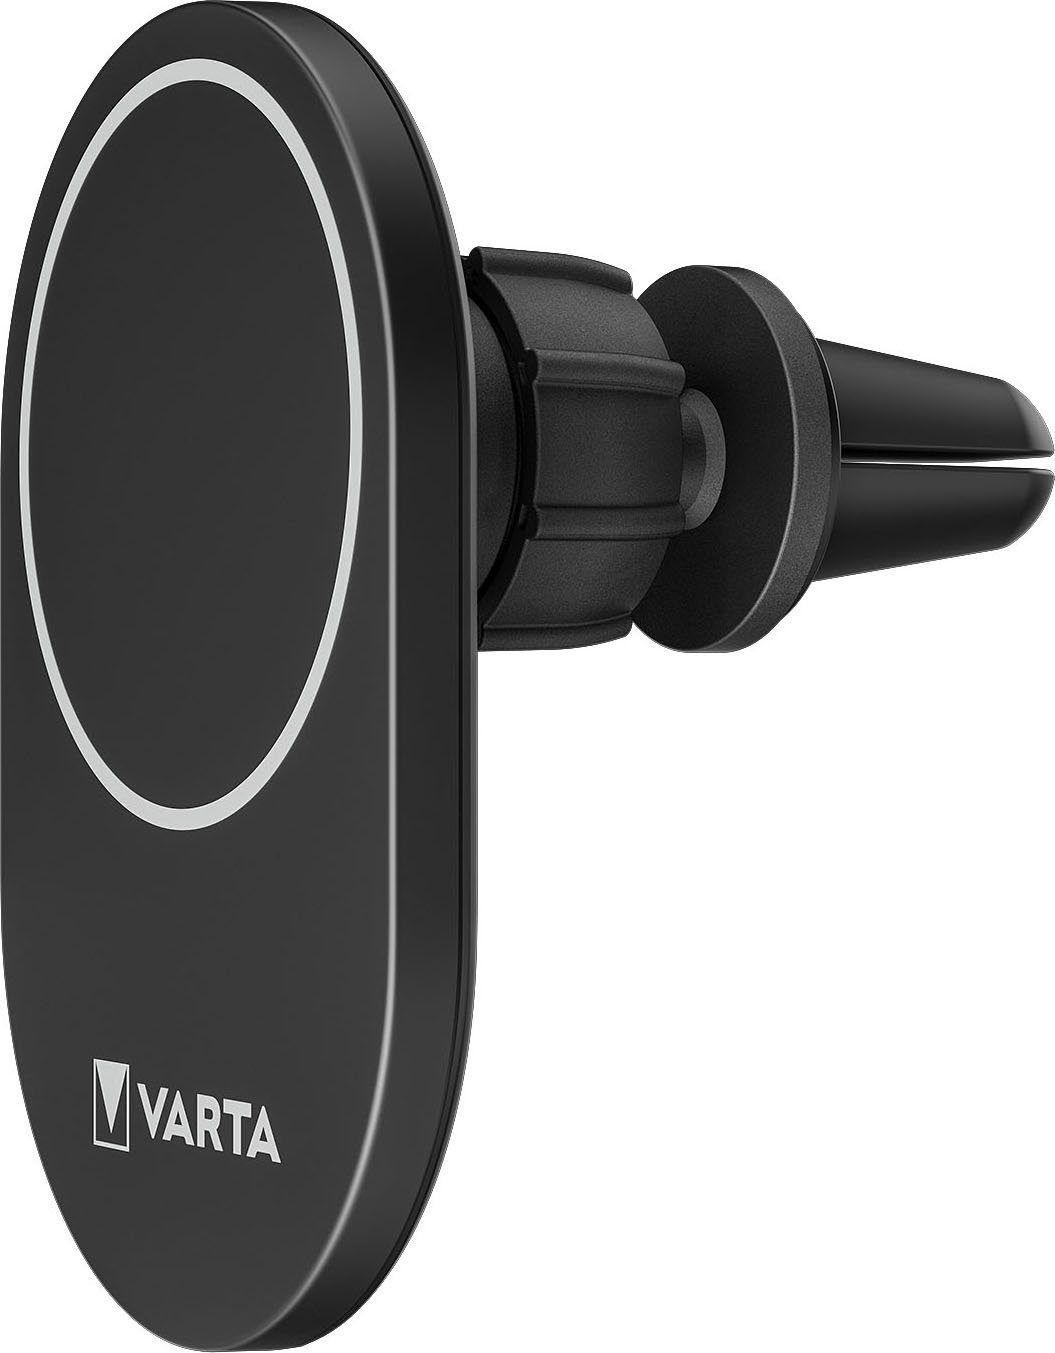 VARTA Mag Pro Wireless Car Autobatterie-Ladegerät